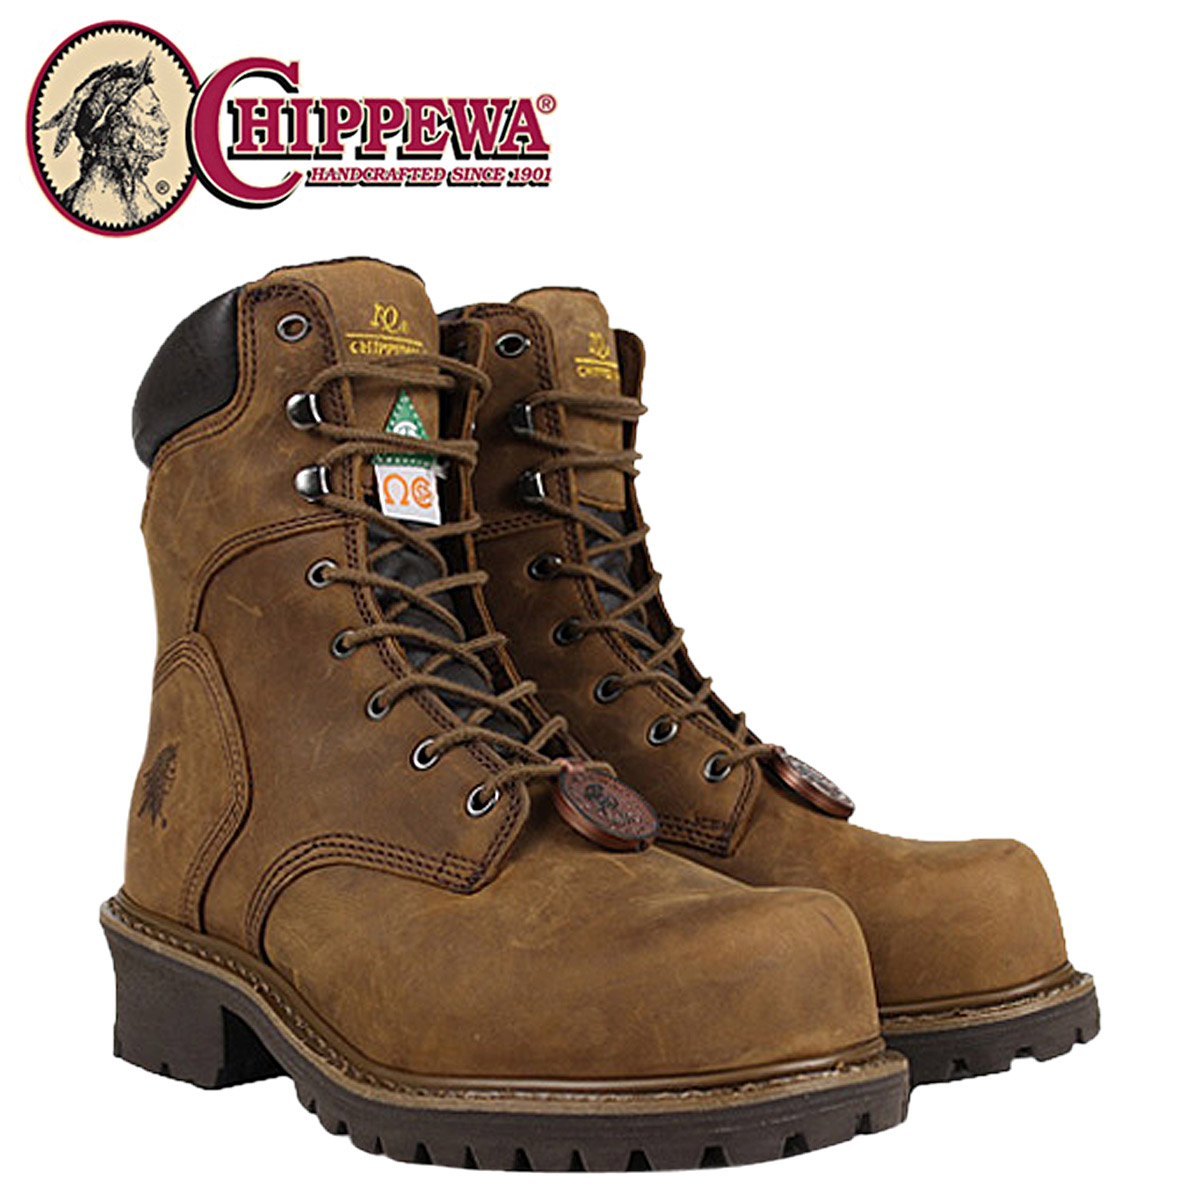 chippewa boots store near me